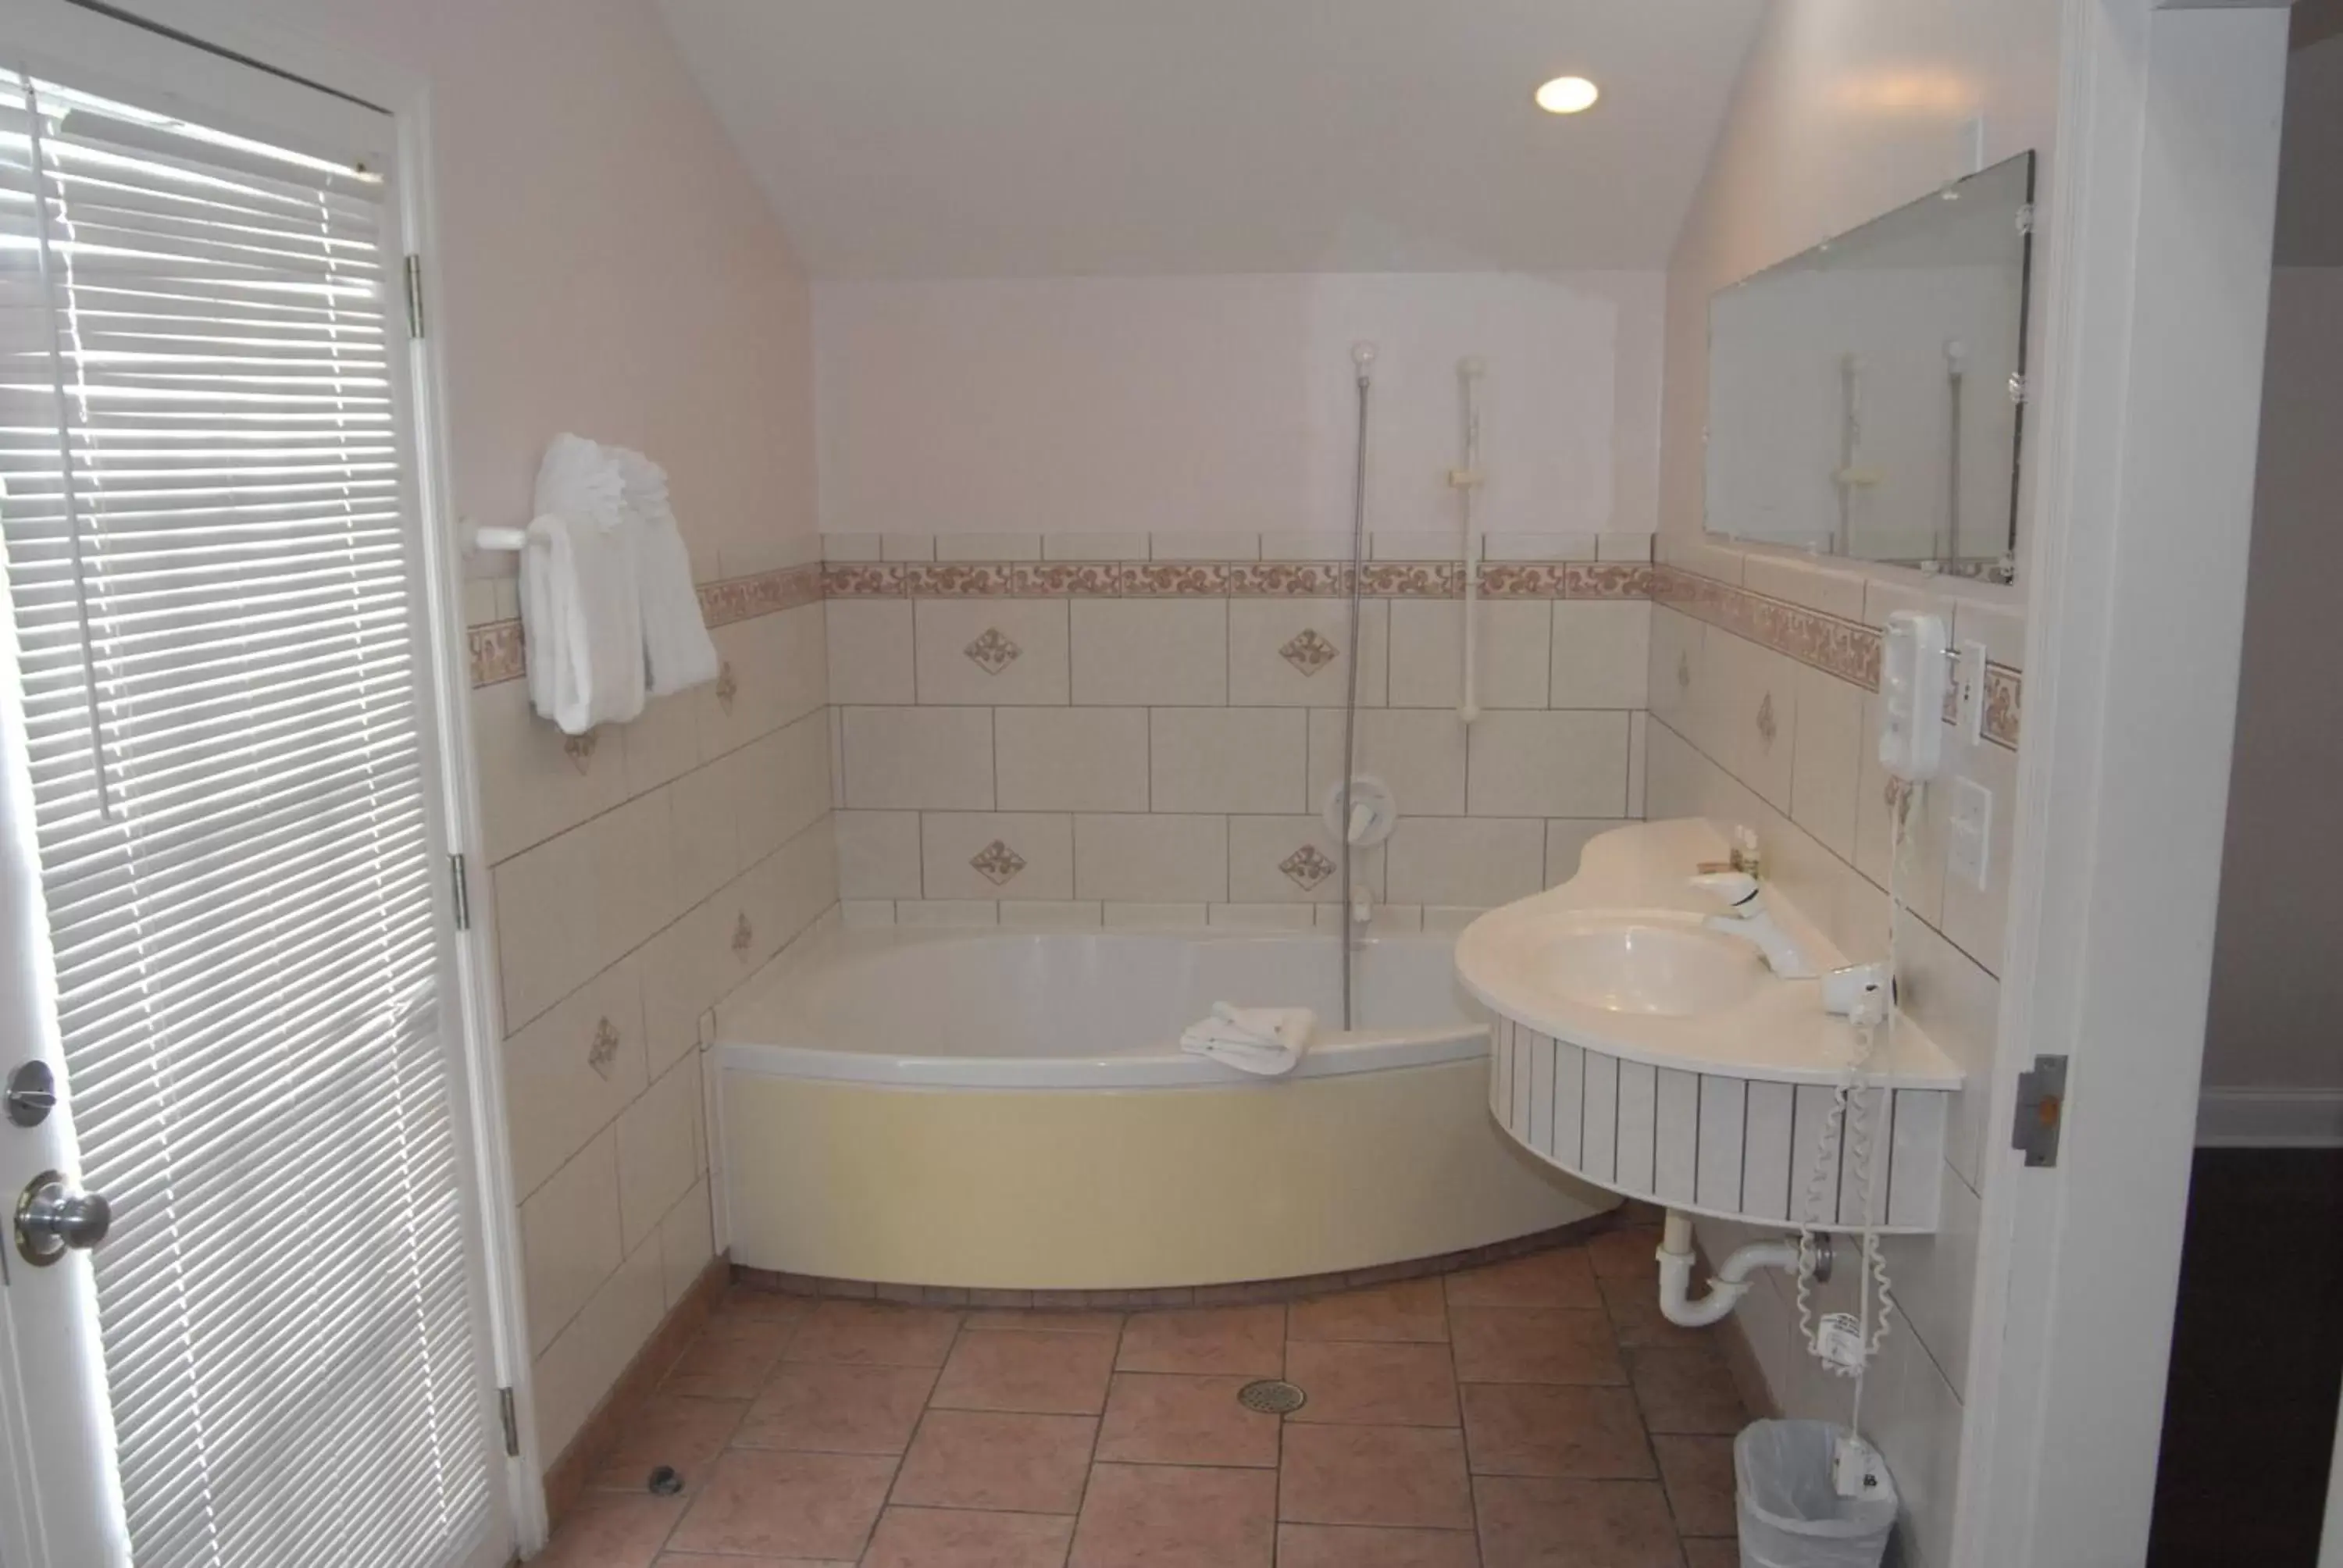 Bathroom in Ibis Bay Resort